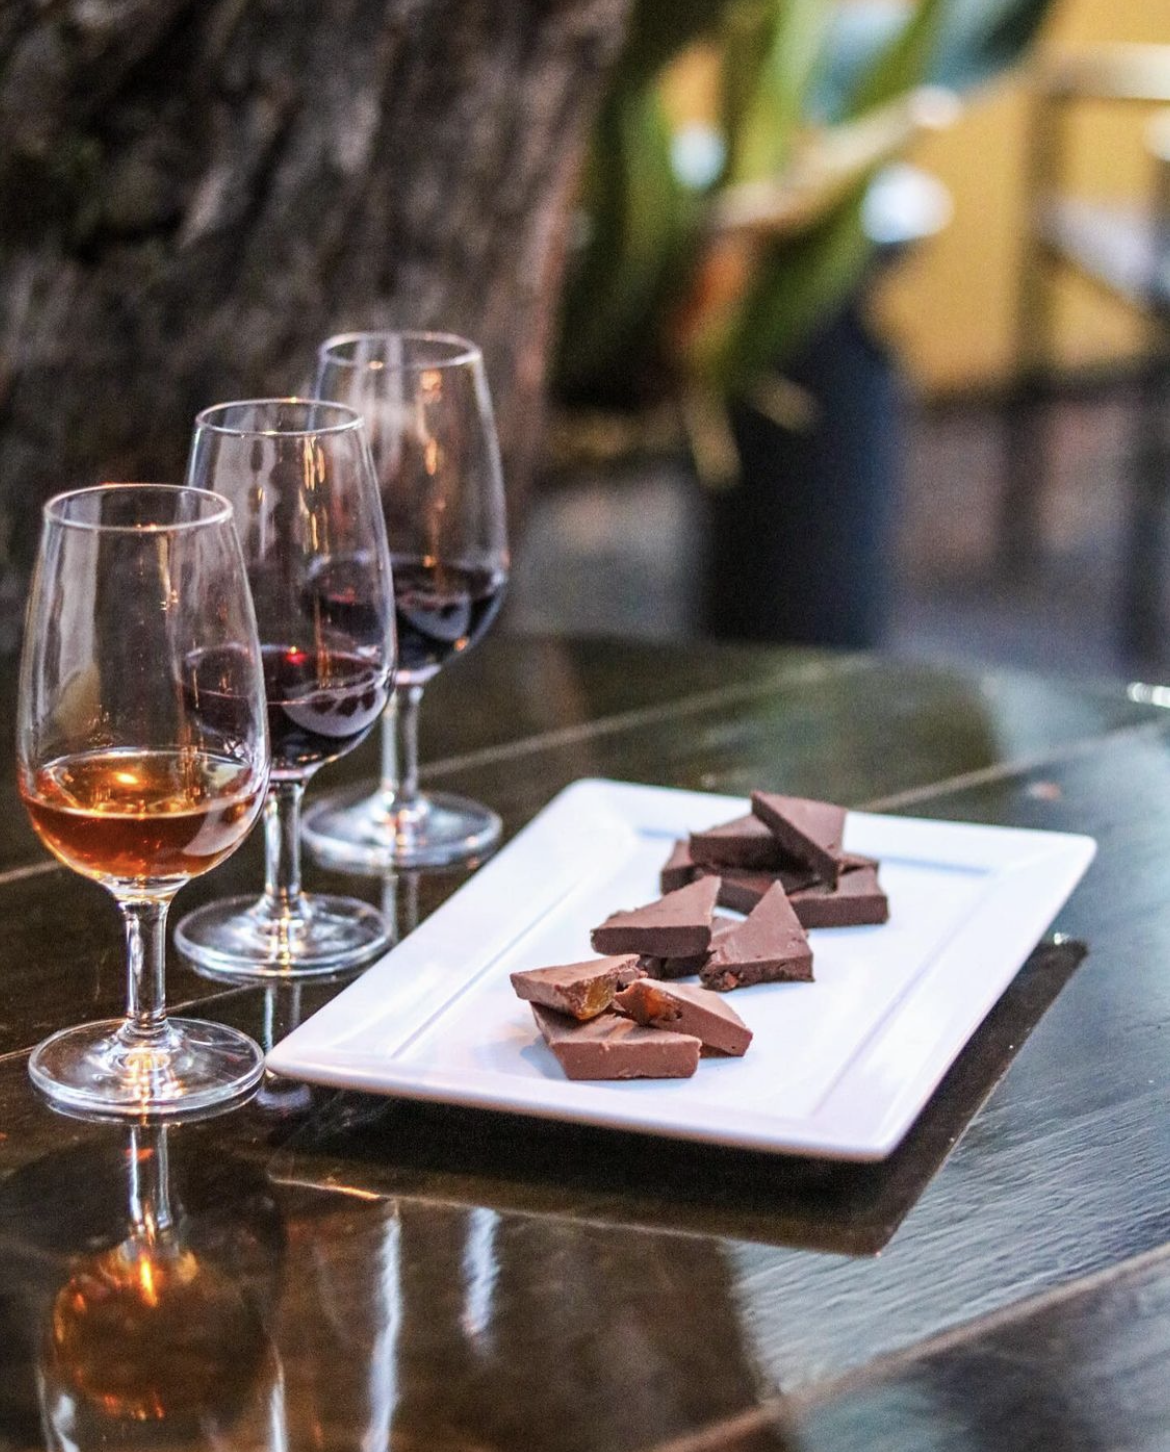 O wine bar propõe uma degustação de chocolates e vinhos fortificados